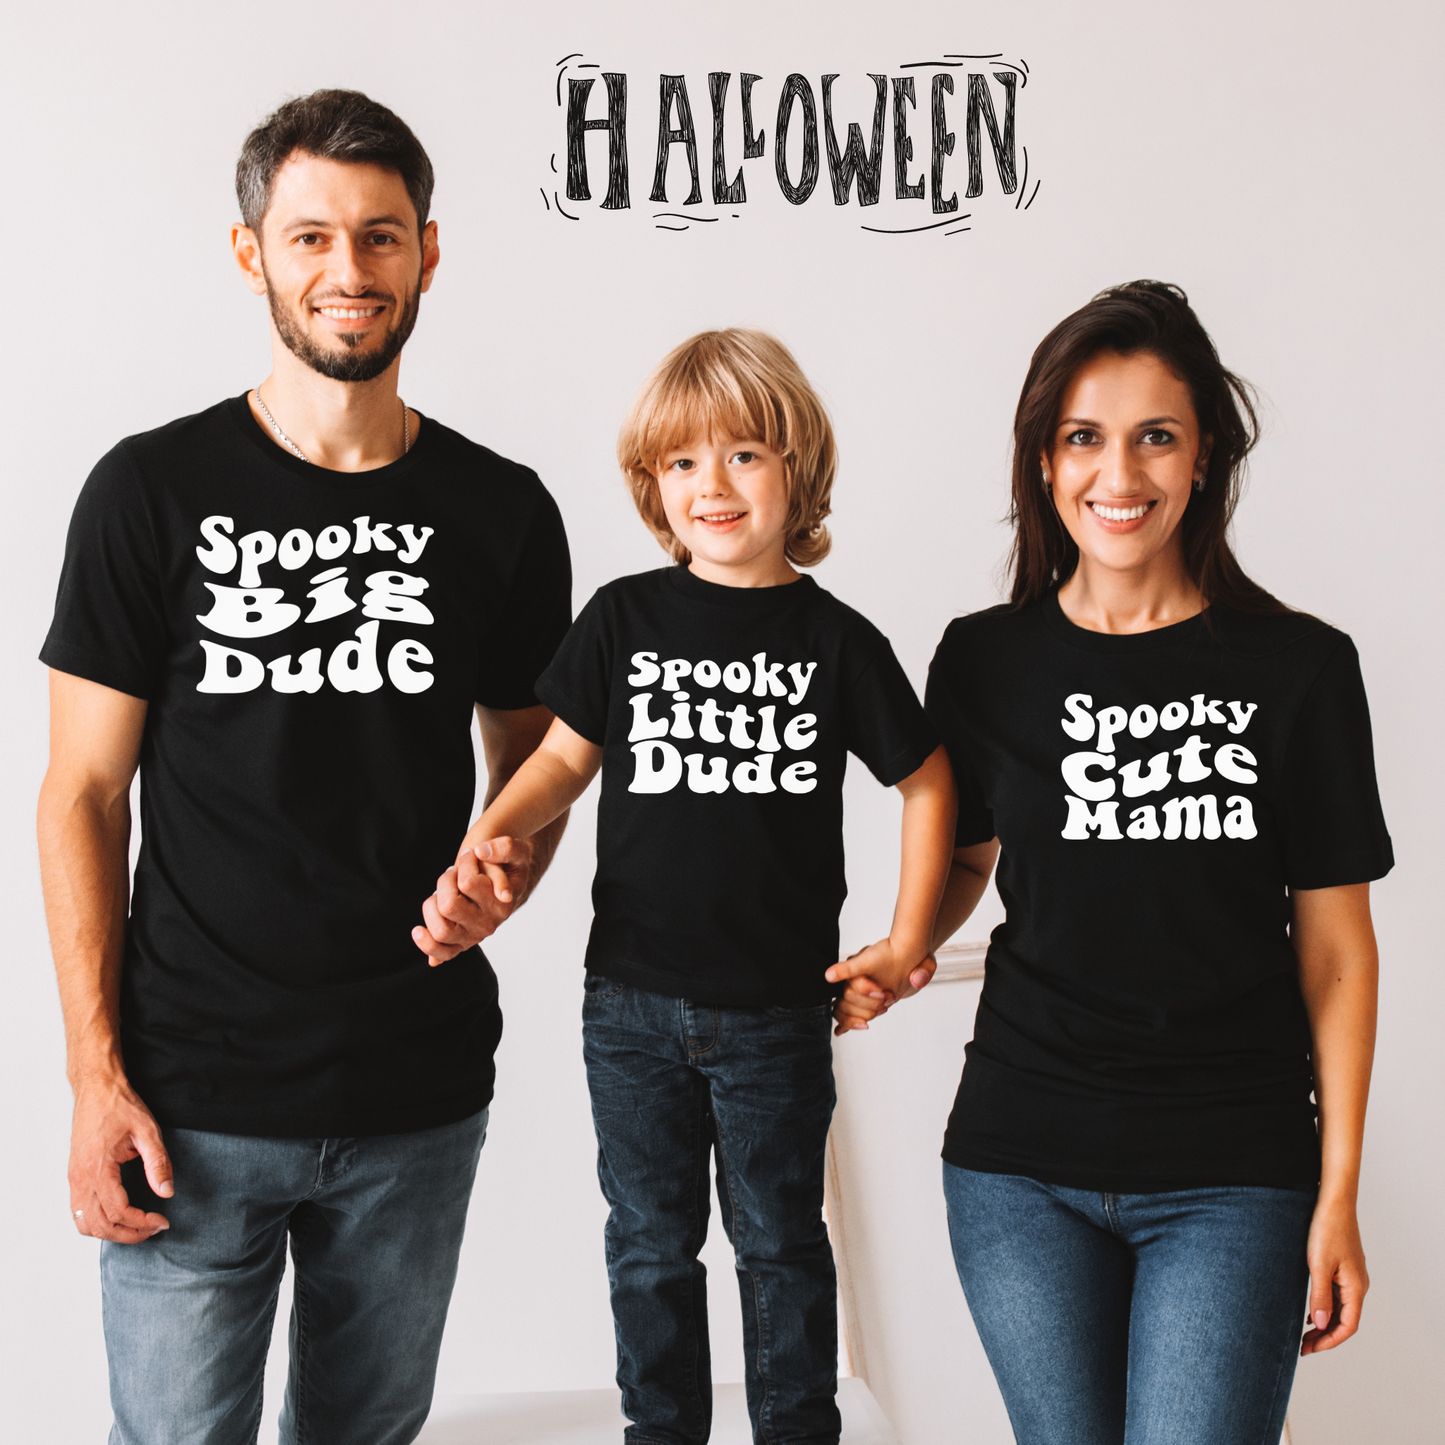 Spooky Little Dude Shirt / Halloween / Fall / matching shirts